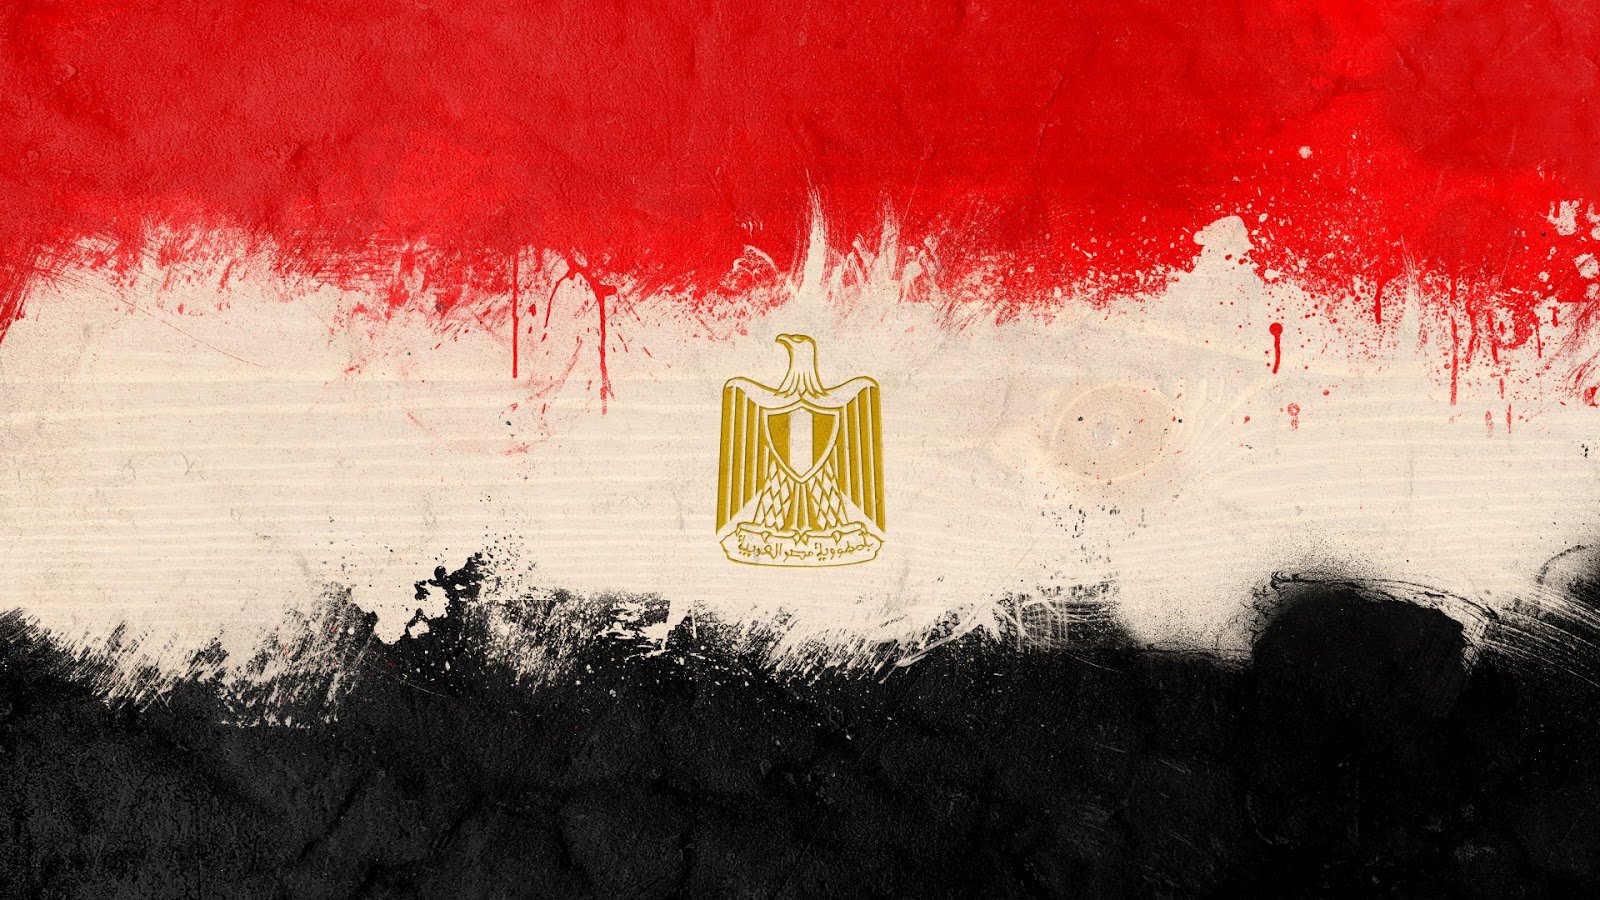 صور علم مصر , خلفيات علم مصر للفيسبوك